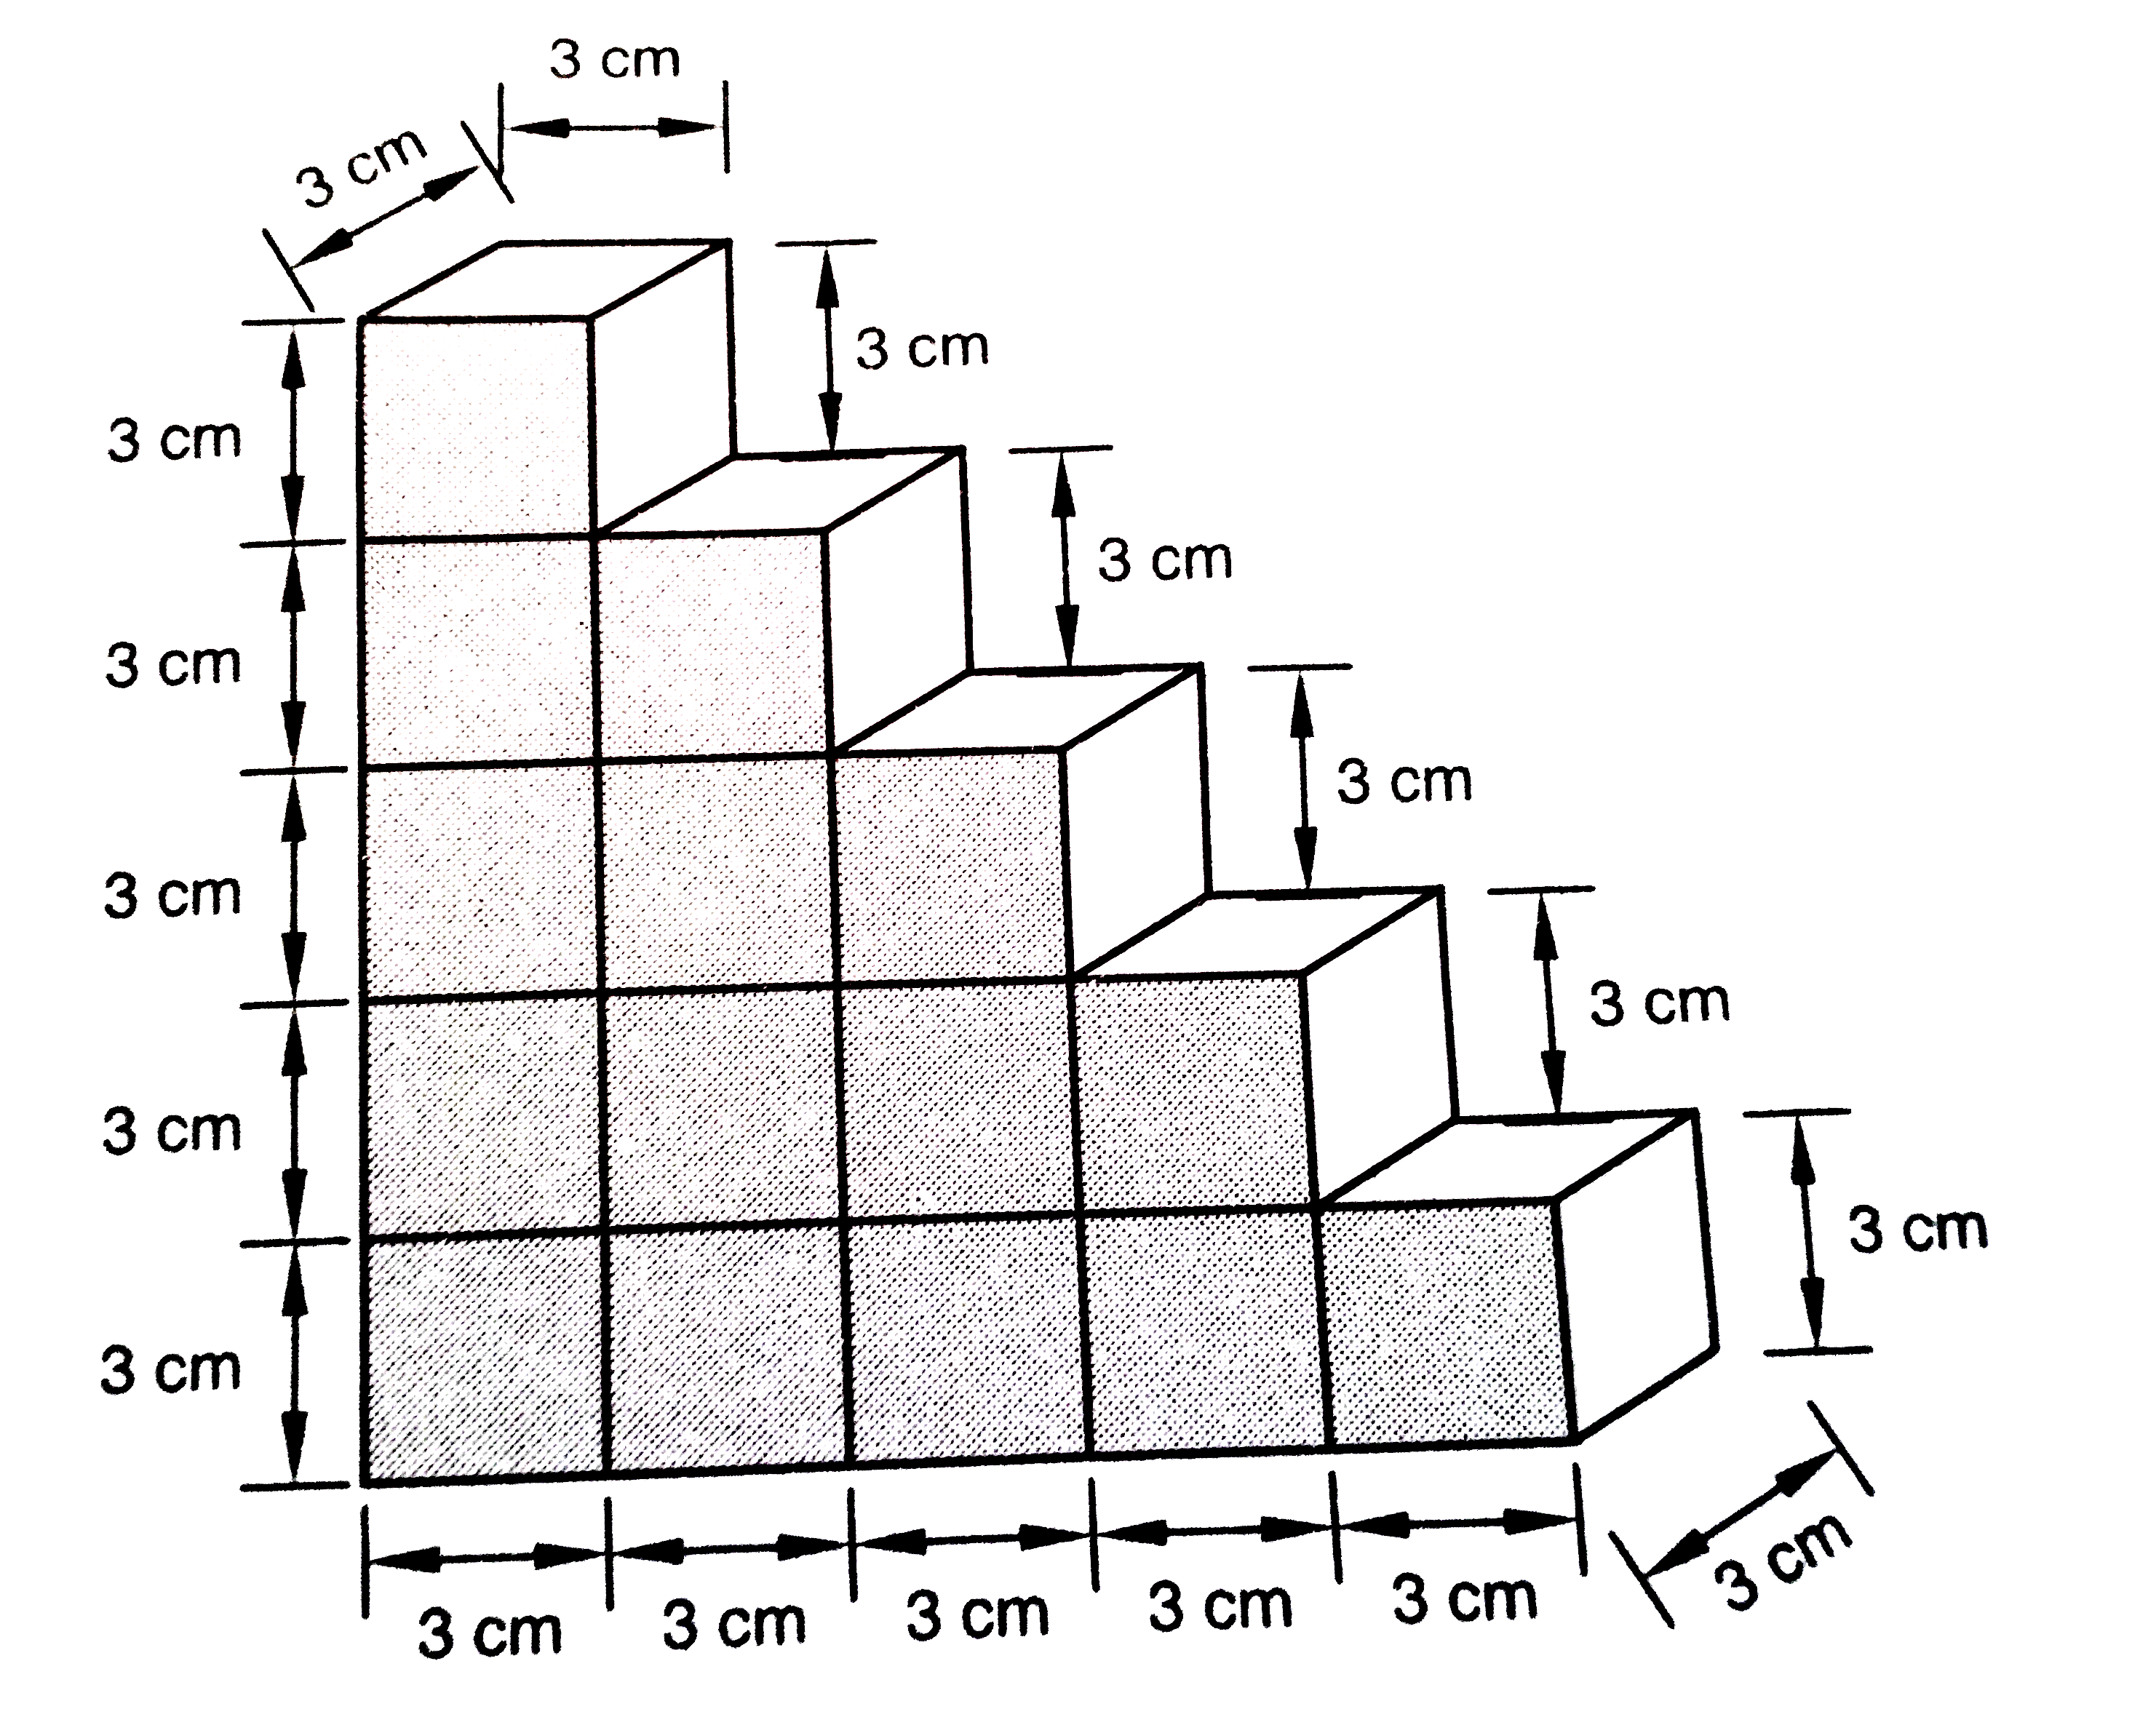 एक बच्चा भवन ब्लाकों से खेल रहा है , जो घनों के आकार के है । उसने इस घनों से चित्र 18.12 में दर्शाए अनुसार  एक ढांचा  बना लिया है । यदि  प्रत्येक  घन का किनारा 3 सेमी. हो तो बच्चे  द्वारा  बनाए गए ढ़ांचे का आयतन  ज्ञात करें ।